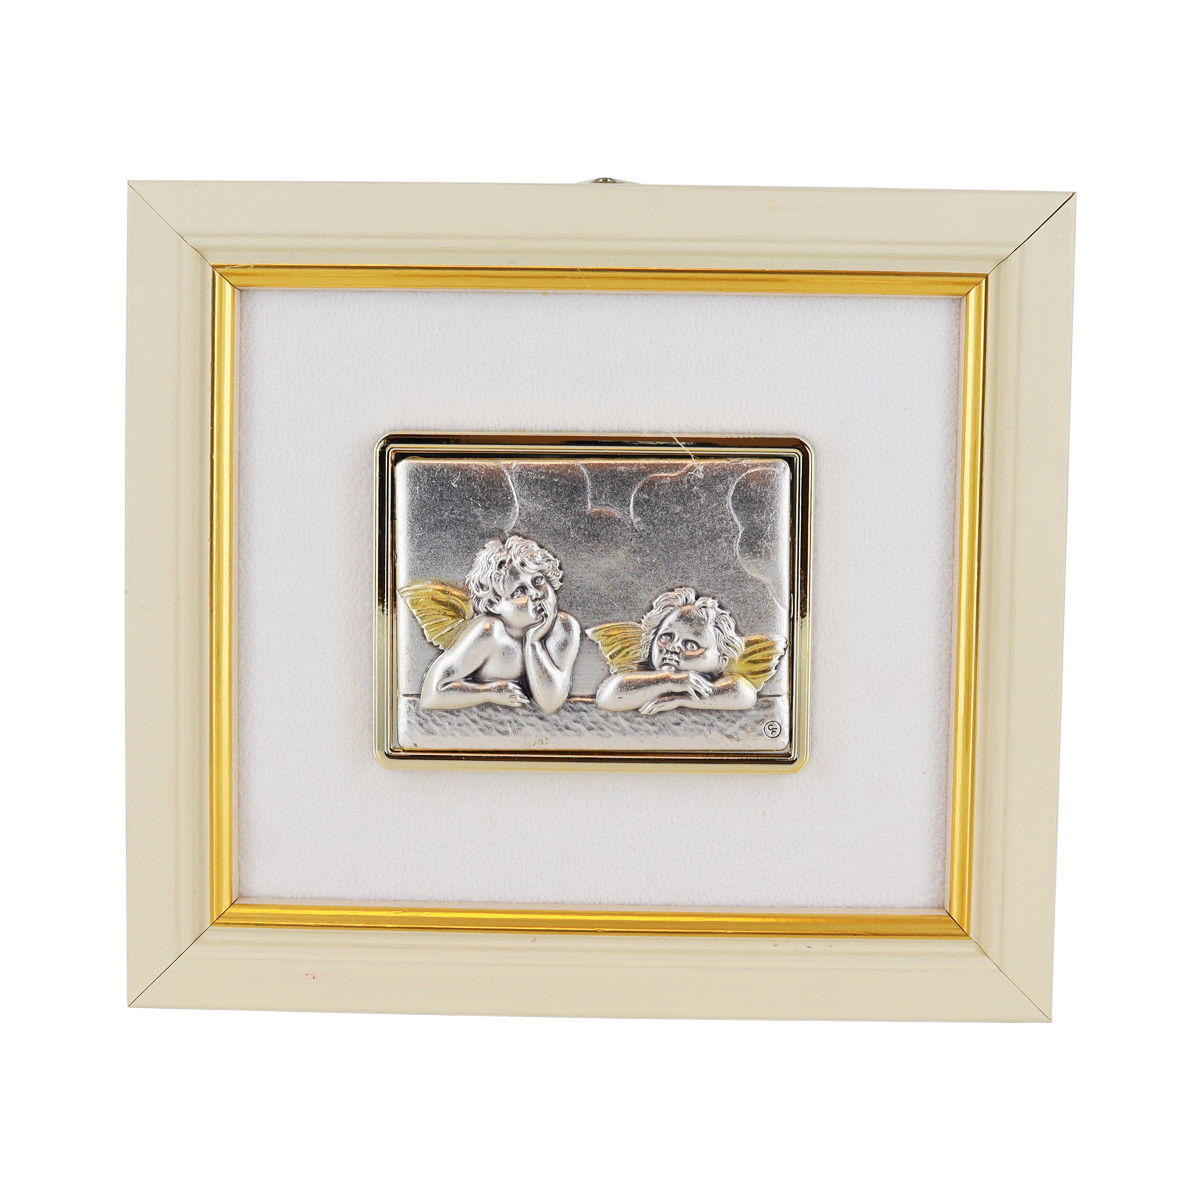 Cadre en bois à suspendre H. 13 x 11.5 cm sujet en plaque laminé argentée et dorée, plusieurs modèles.